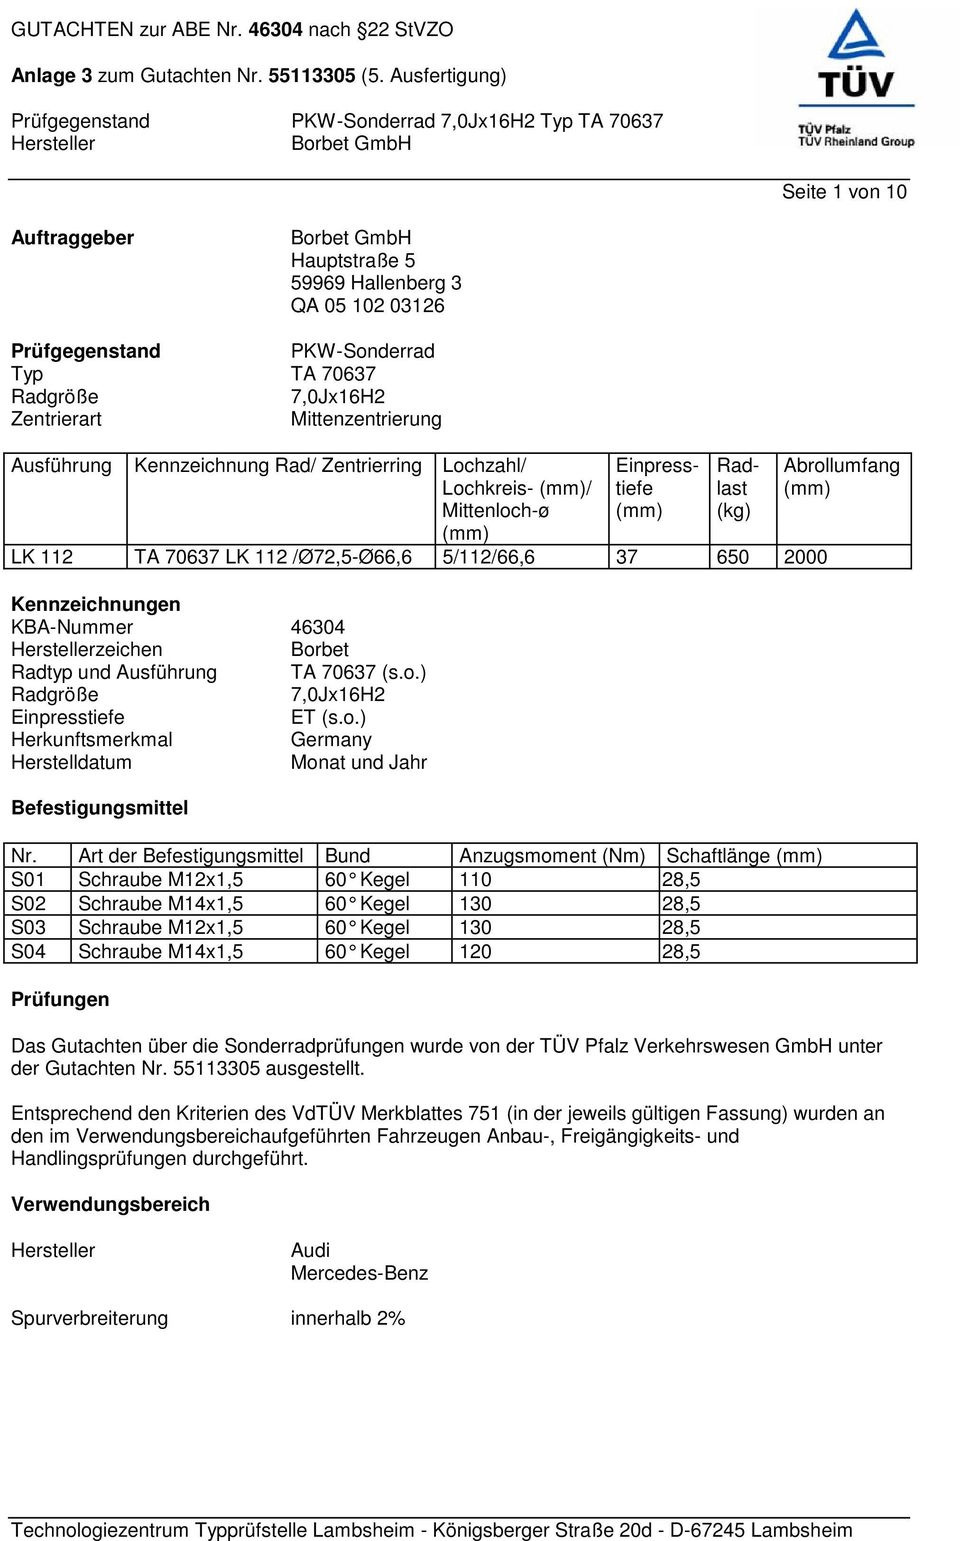 Radtyp und Ausführung TA 70637 (s.o.) Radgröße 7,0Jx16H2 Einpresstiefe ET (s.o.) Herkunftsmerkmal Germany Herstelldatum Monat und Jahr Befestigungsmittel Nr.